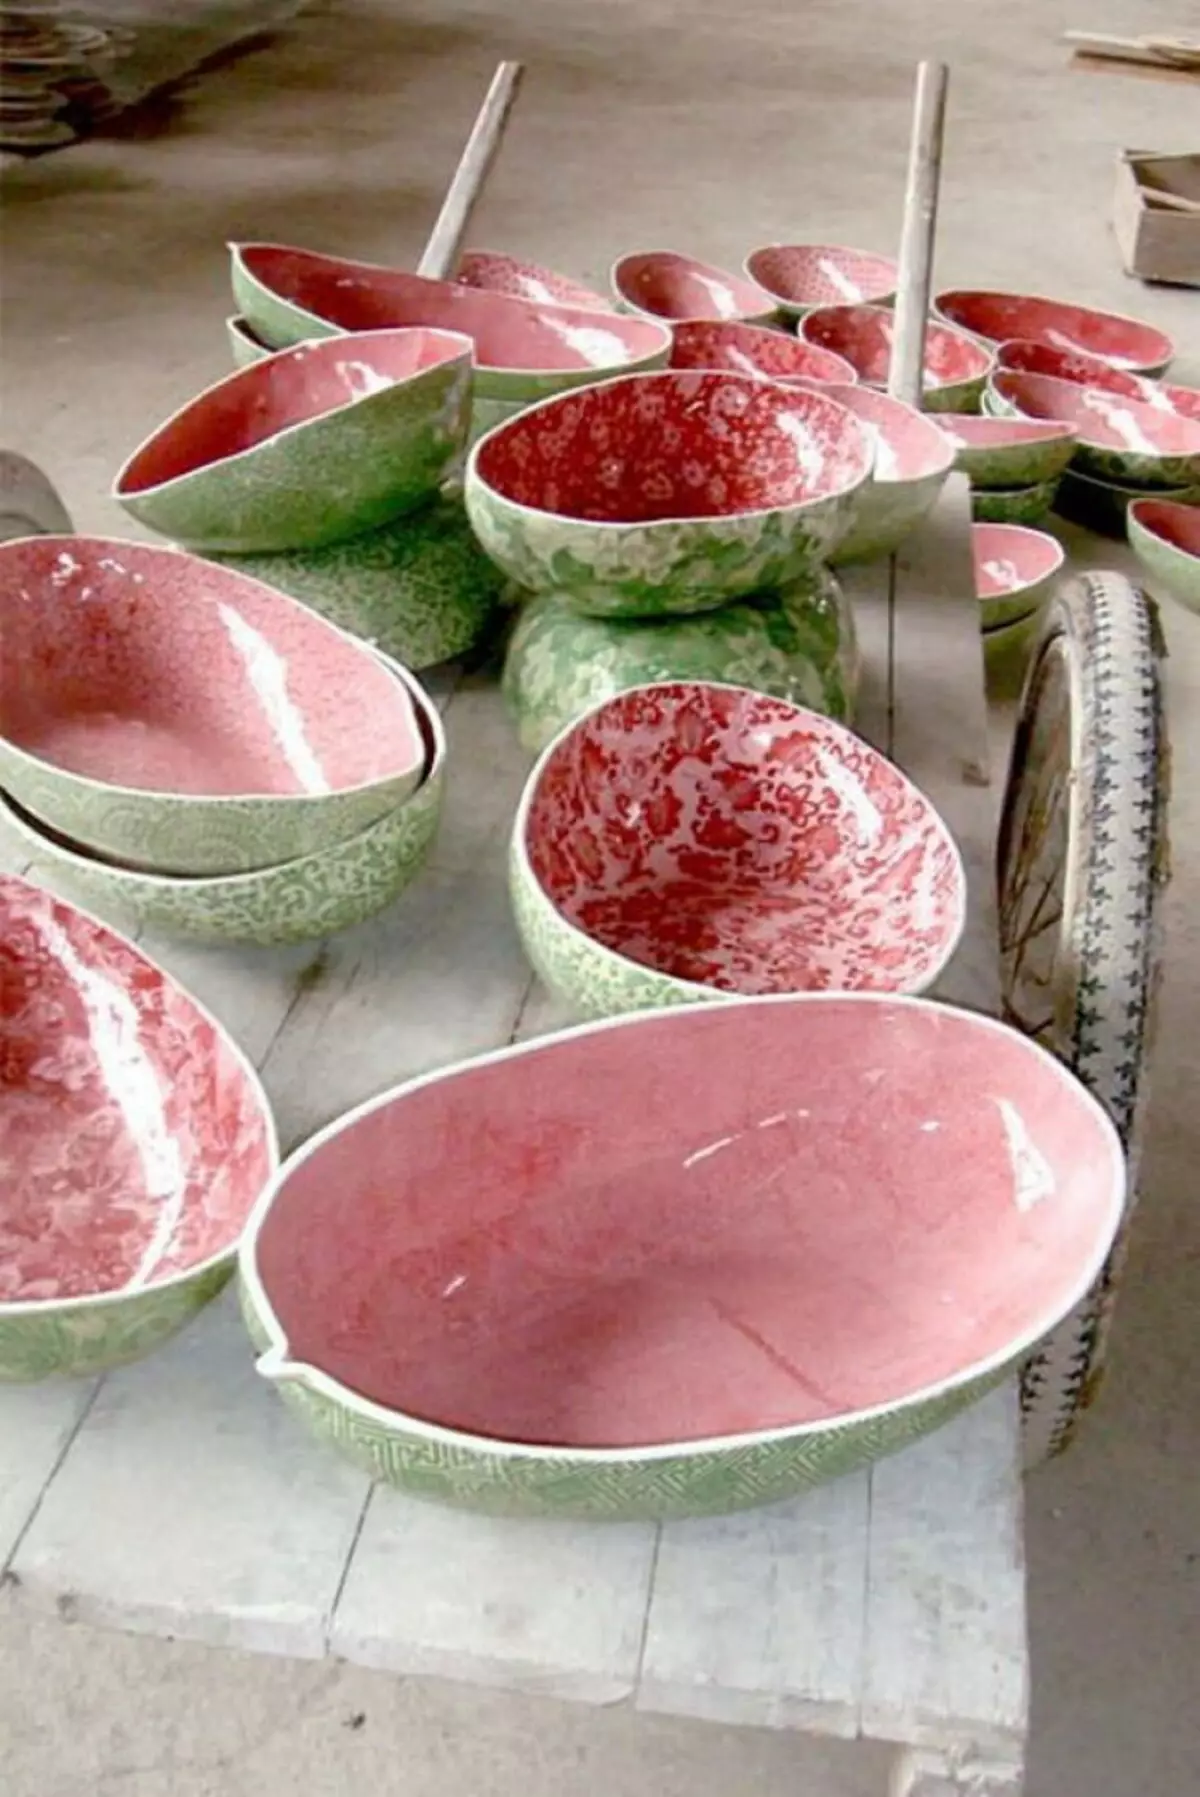 Handgemachte Keramik: Ideen für diejenigen, die träumen, um mit Ton zu arbeiten